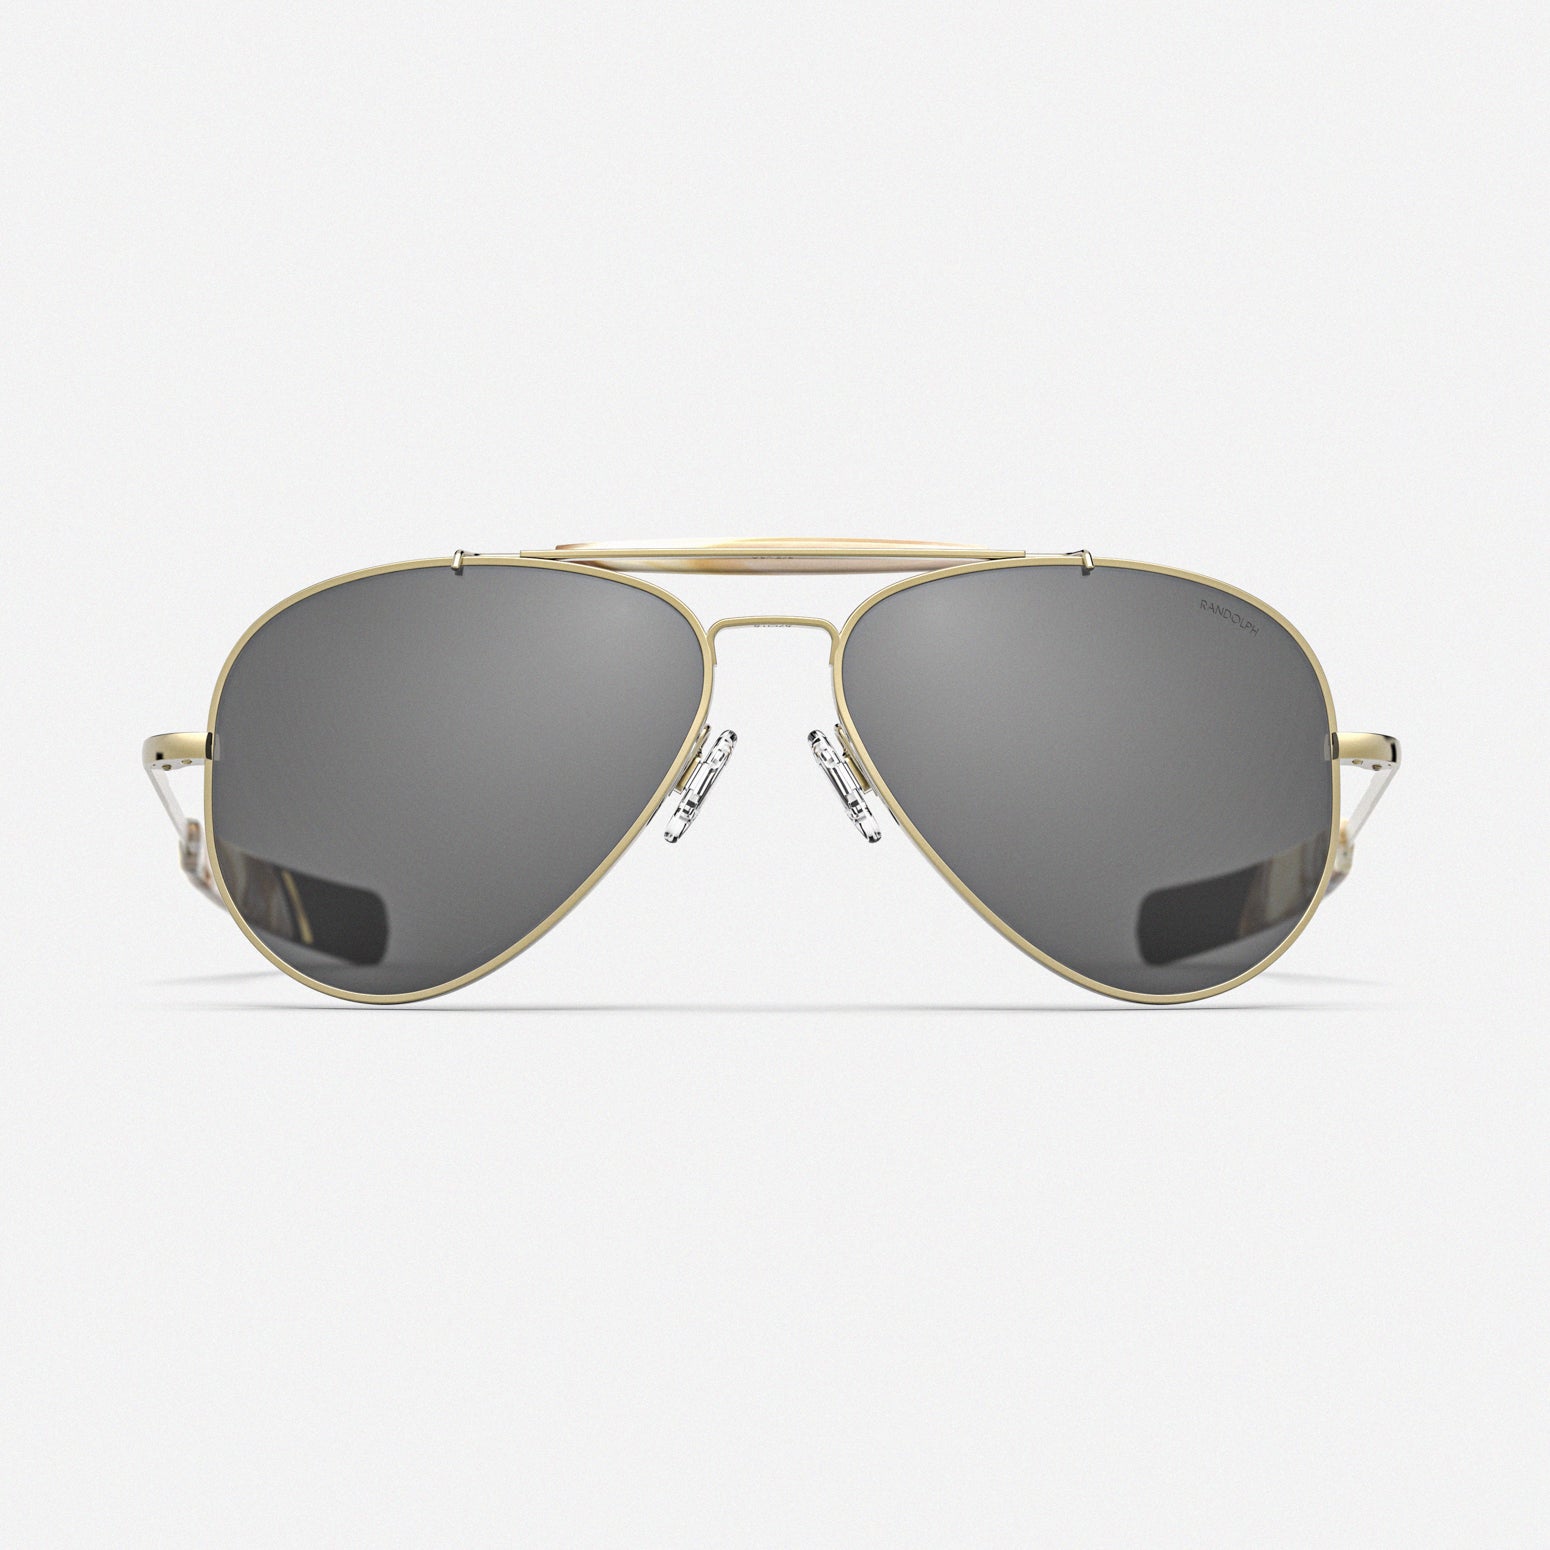 Optic vision - Louis Vuitton waimea #sunglasses #fashion